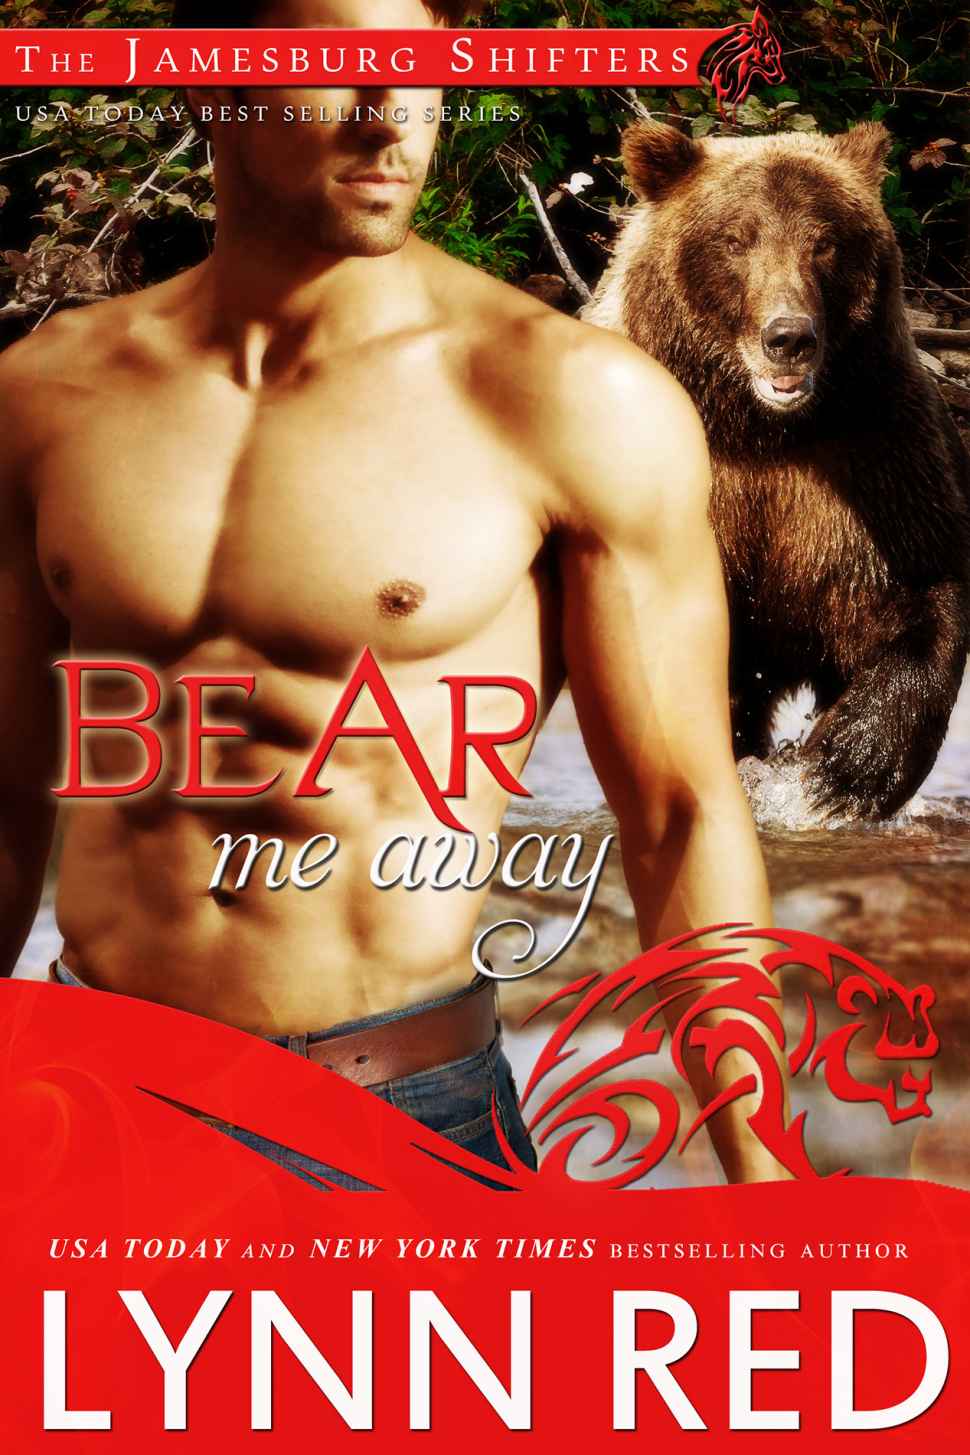 Bear Me Away (Alpha Werebear Paranormal Romance) (A Jamesburg Shifter Romance) by Lynn Red